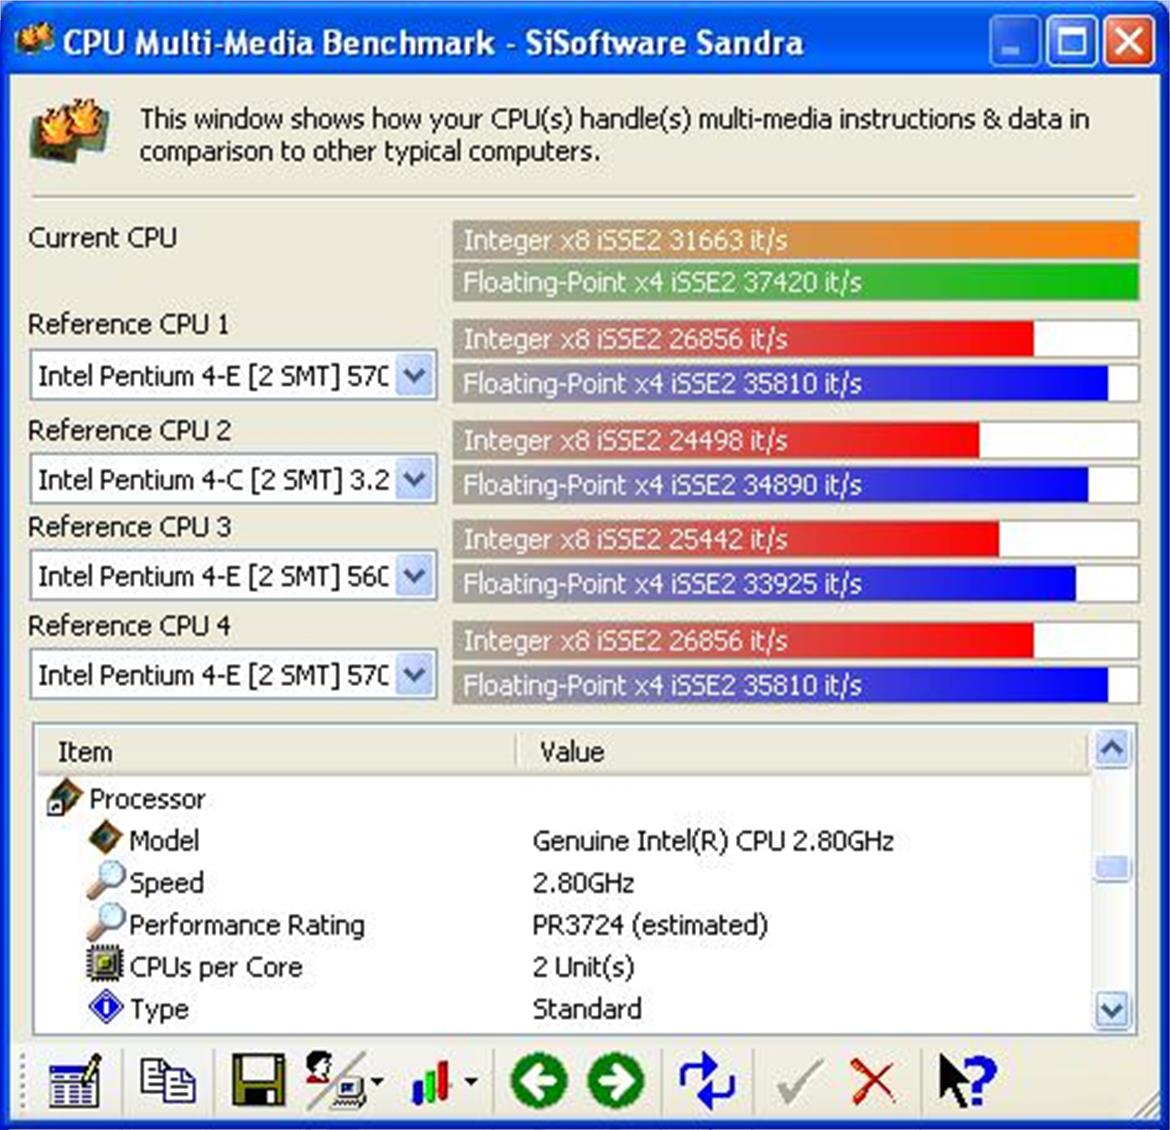 Pentium D 820 and i945G/P Chipset Showcase